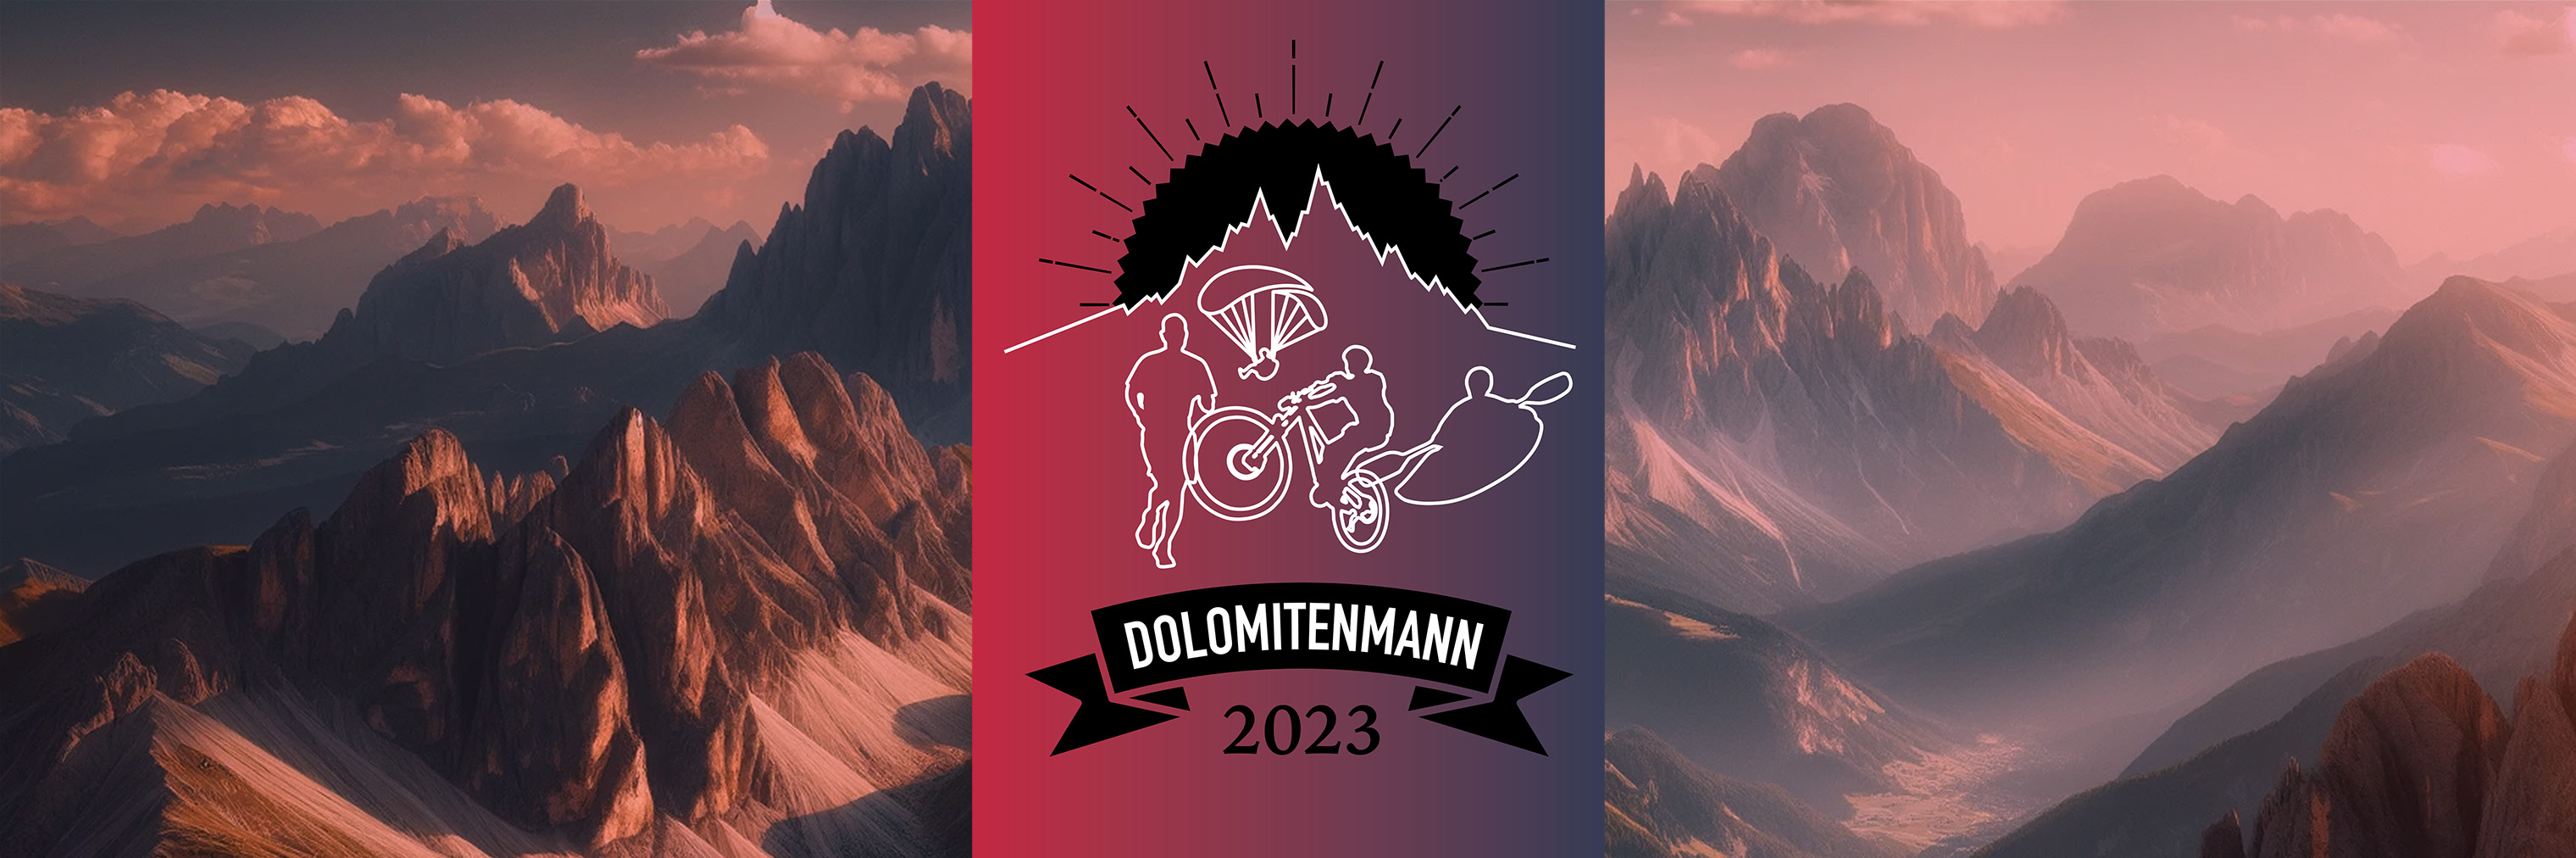 Nejtěžší světový závod Dolomitenmann - tým INTERSPORT vybojoval 7. místo!